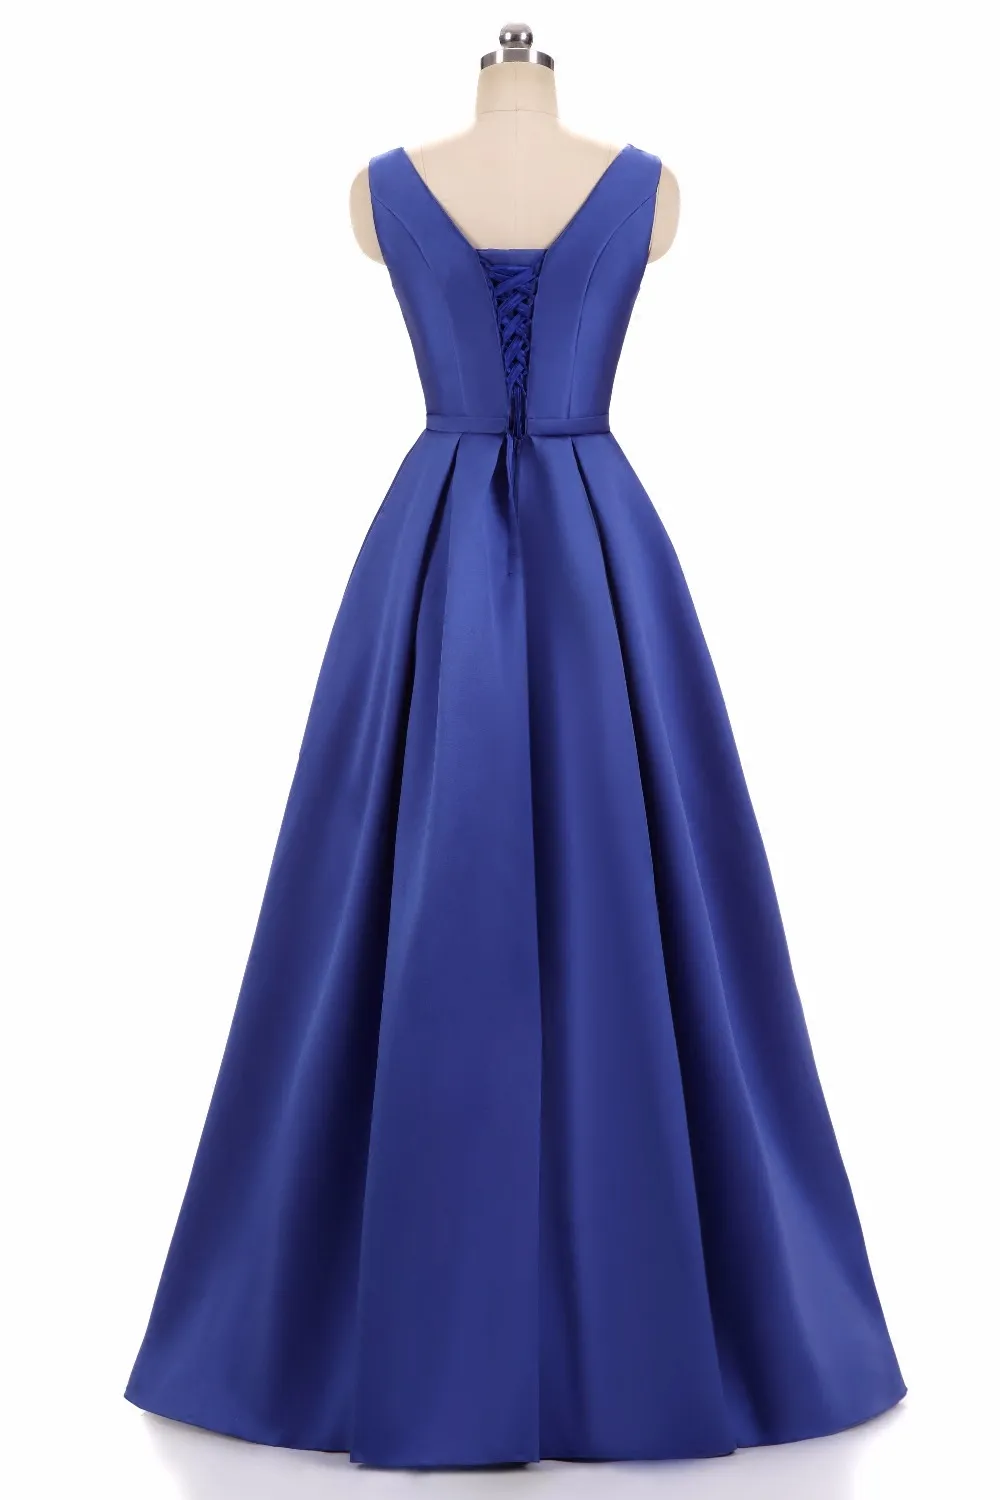 Robes mère de la mariée élégantes en Satin bleu, longues robes de bal, à lacets avec fermeture éclair au dos, longueur au sol, robe formelle